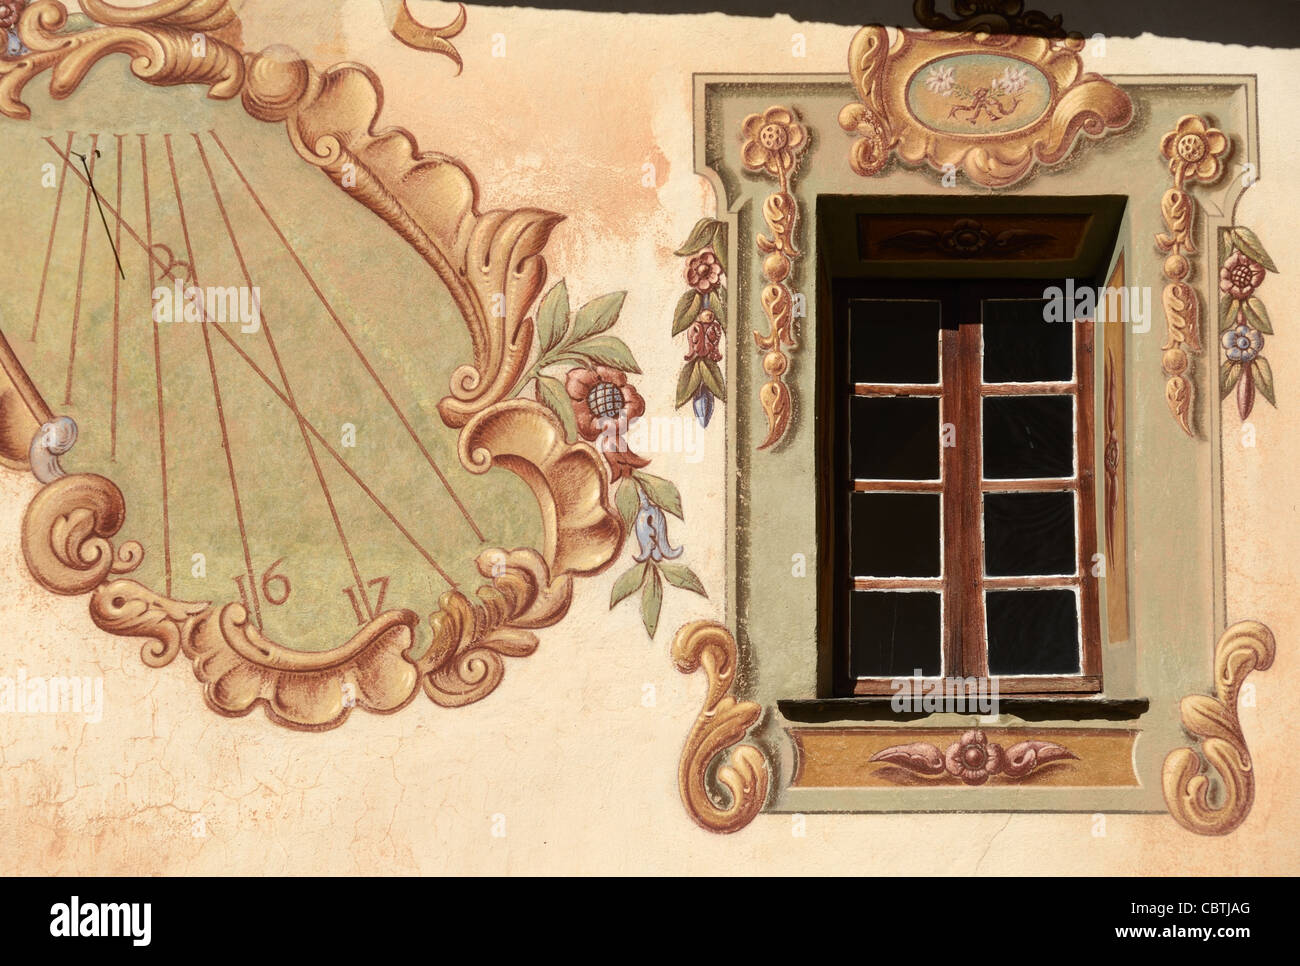 Fenêtre baroque, décor ou décoration baroque et Sundial Saorge monastère franciscain Saorge dans la vallée de la Roya Alpes-Maritimes France Banque D'Images